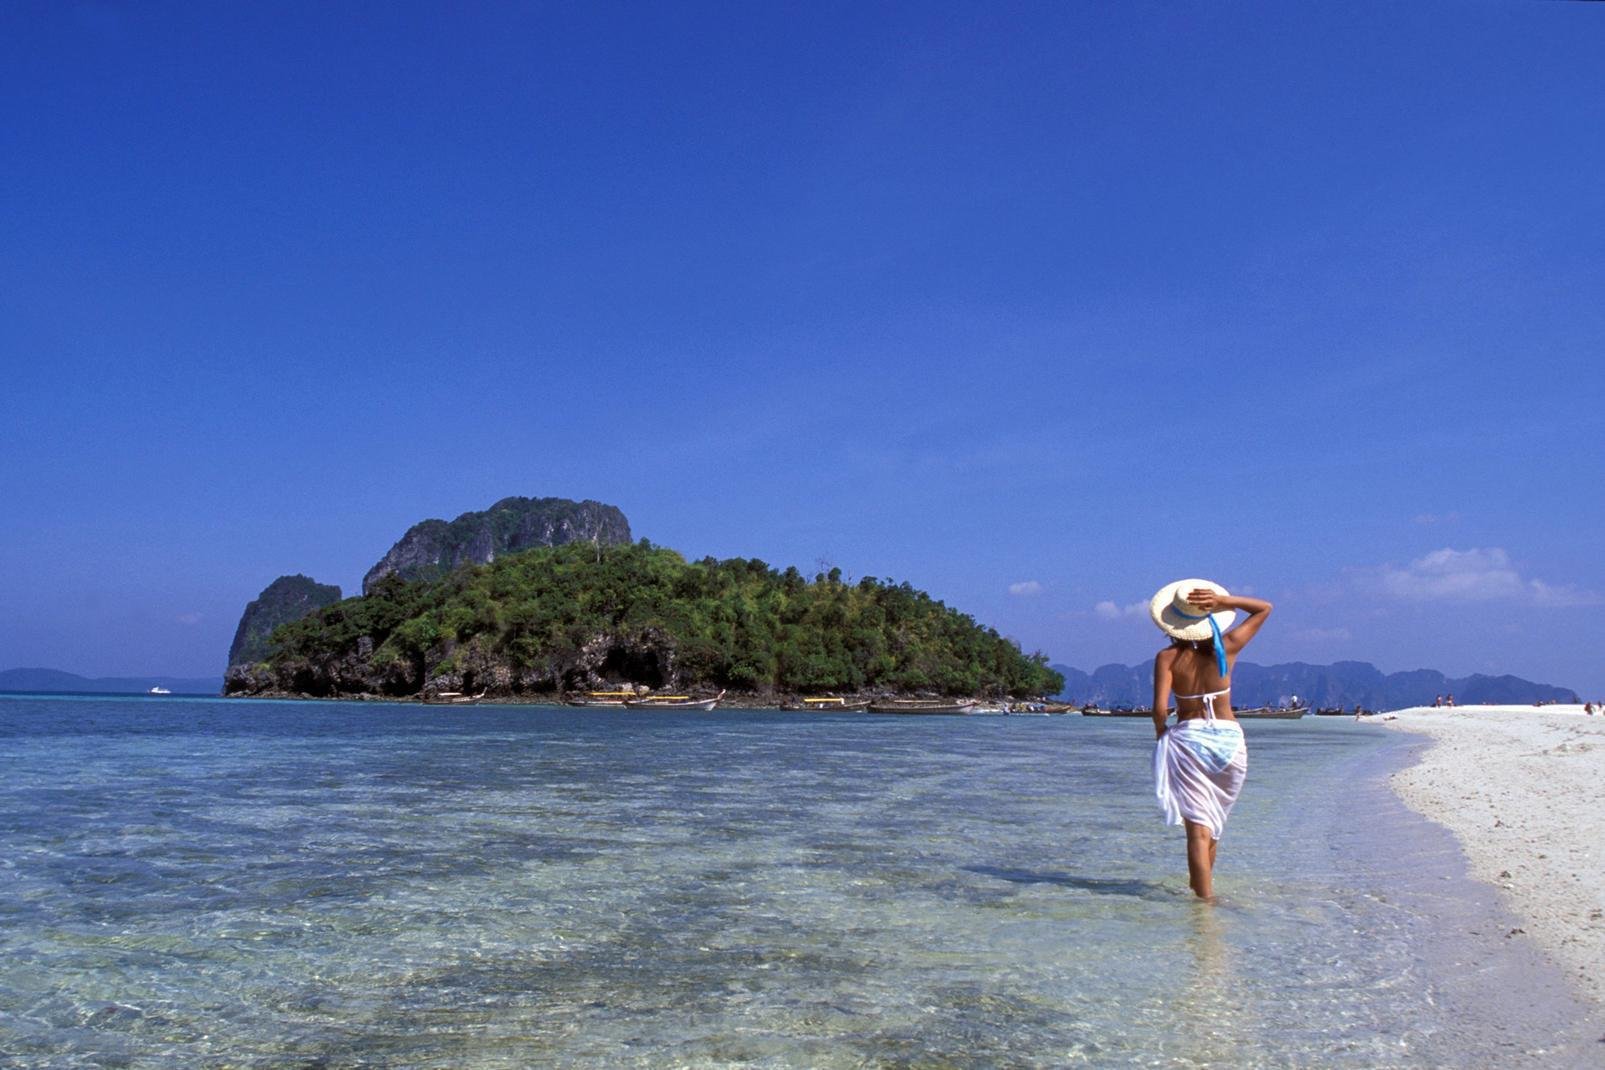 Située sur la côte sud thaïlandaise, face à la mer d'Andaman, la province de Krabi compte à son actif plus de 150 îles. De magnifiques paysages se dessinent grâce à ses immenses formations karstiques. Toute la côte en est pourvue et offre souvent un incroyable spectacle. Côté balnéaire, le littoral de Krabi est tout simplement superbe : sable fin et eaux transparentes à des températures hallucinantes. ...